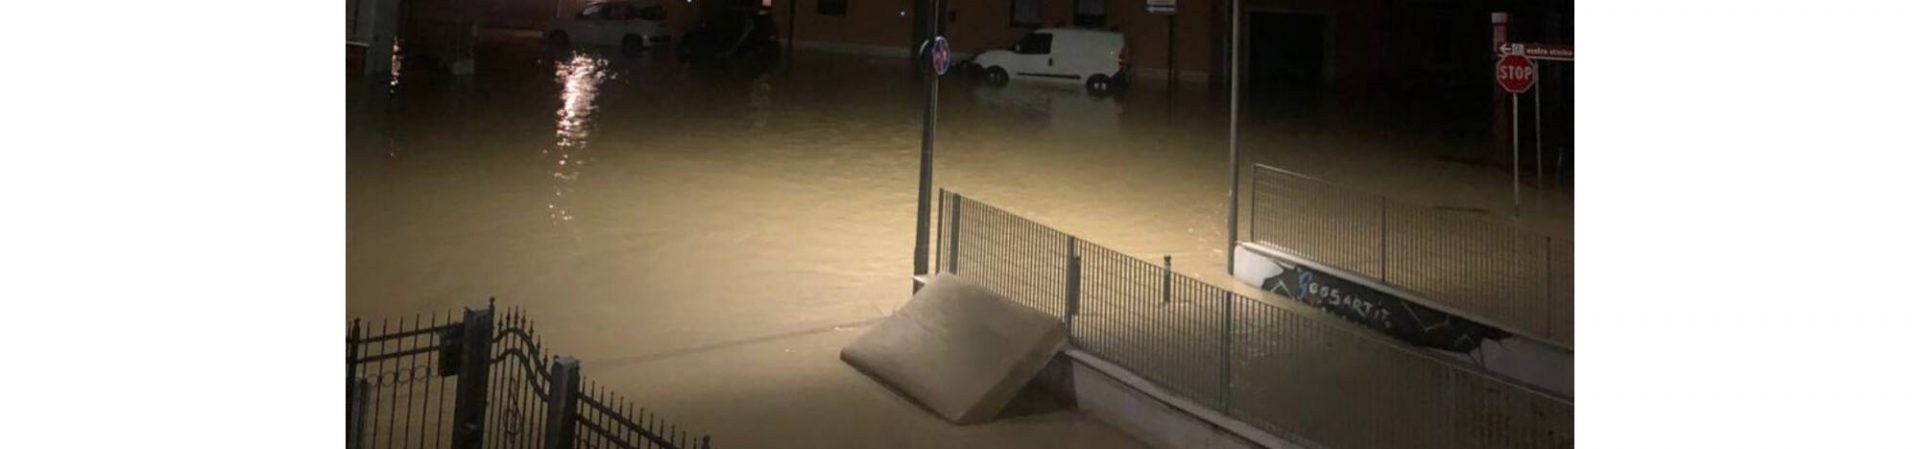 Alluvione: da Confesercenti solidarietà e vicinanza, ma anche la richiesta di aiuti concreti